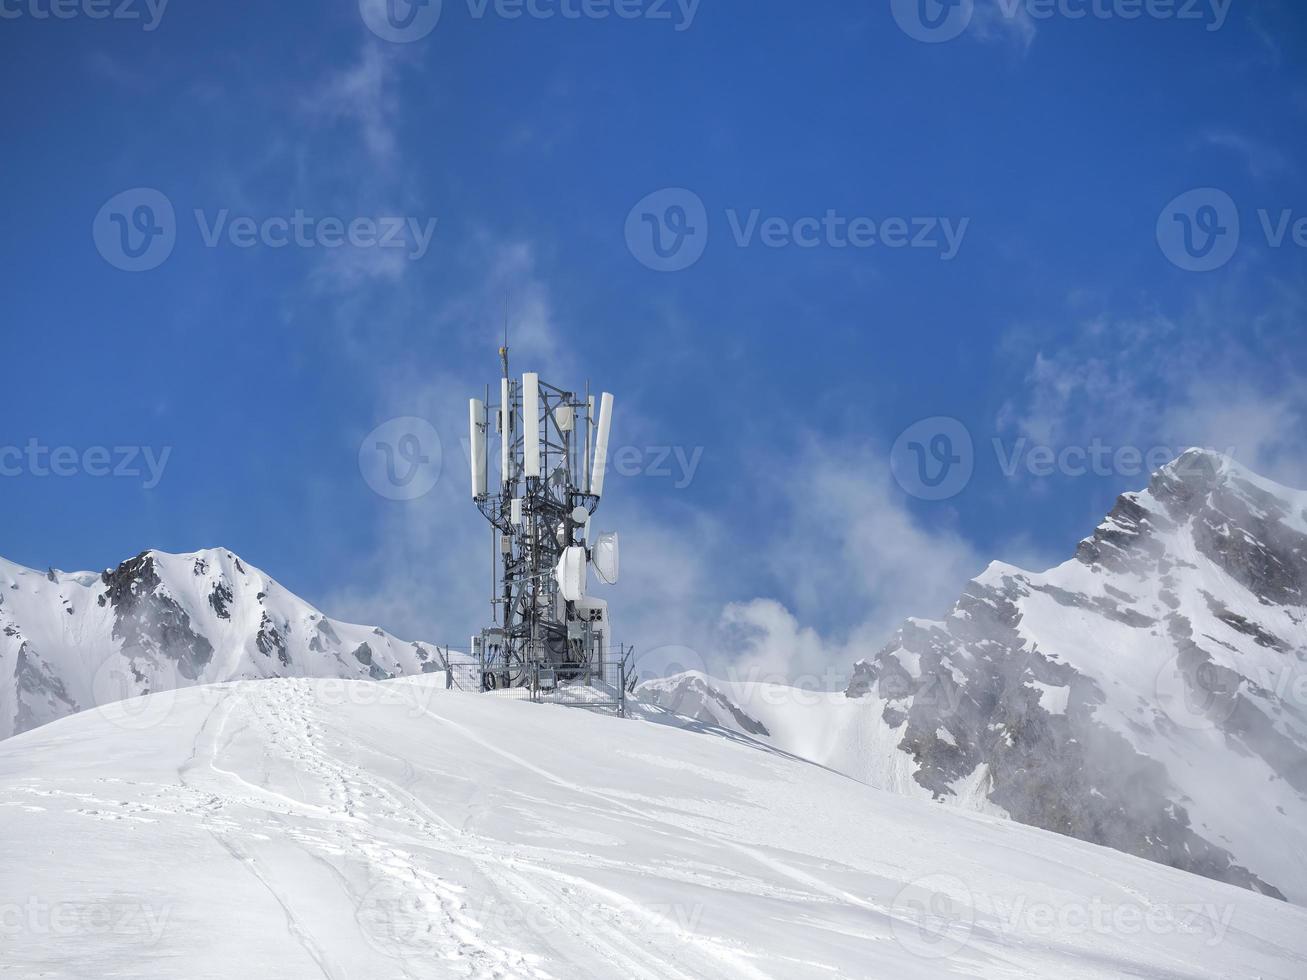 antenn och sändtagare 5g, 4g på toppen av bergen på vintern med snö foto